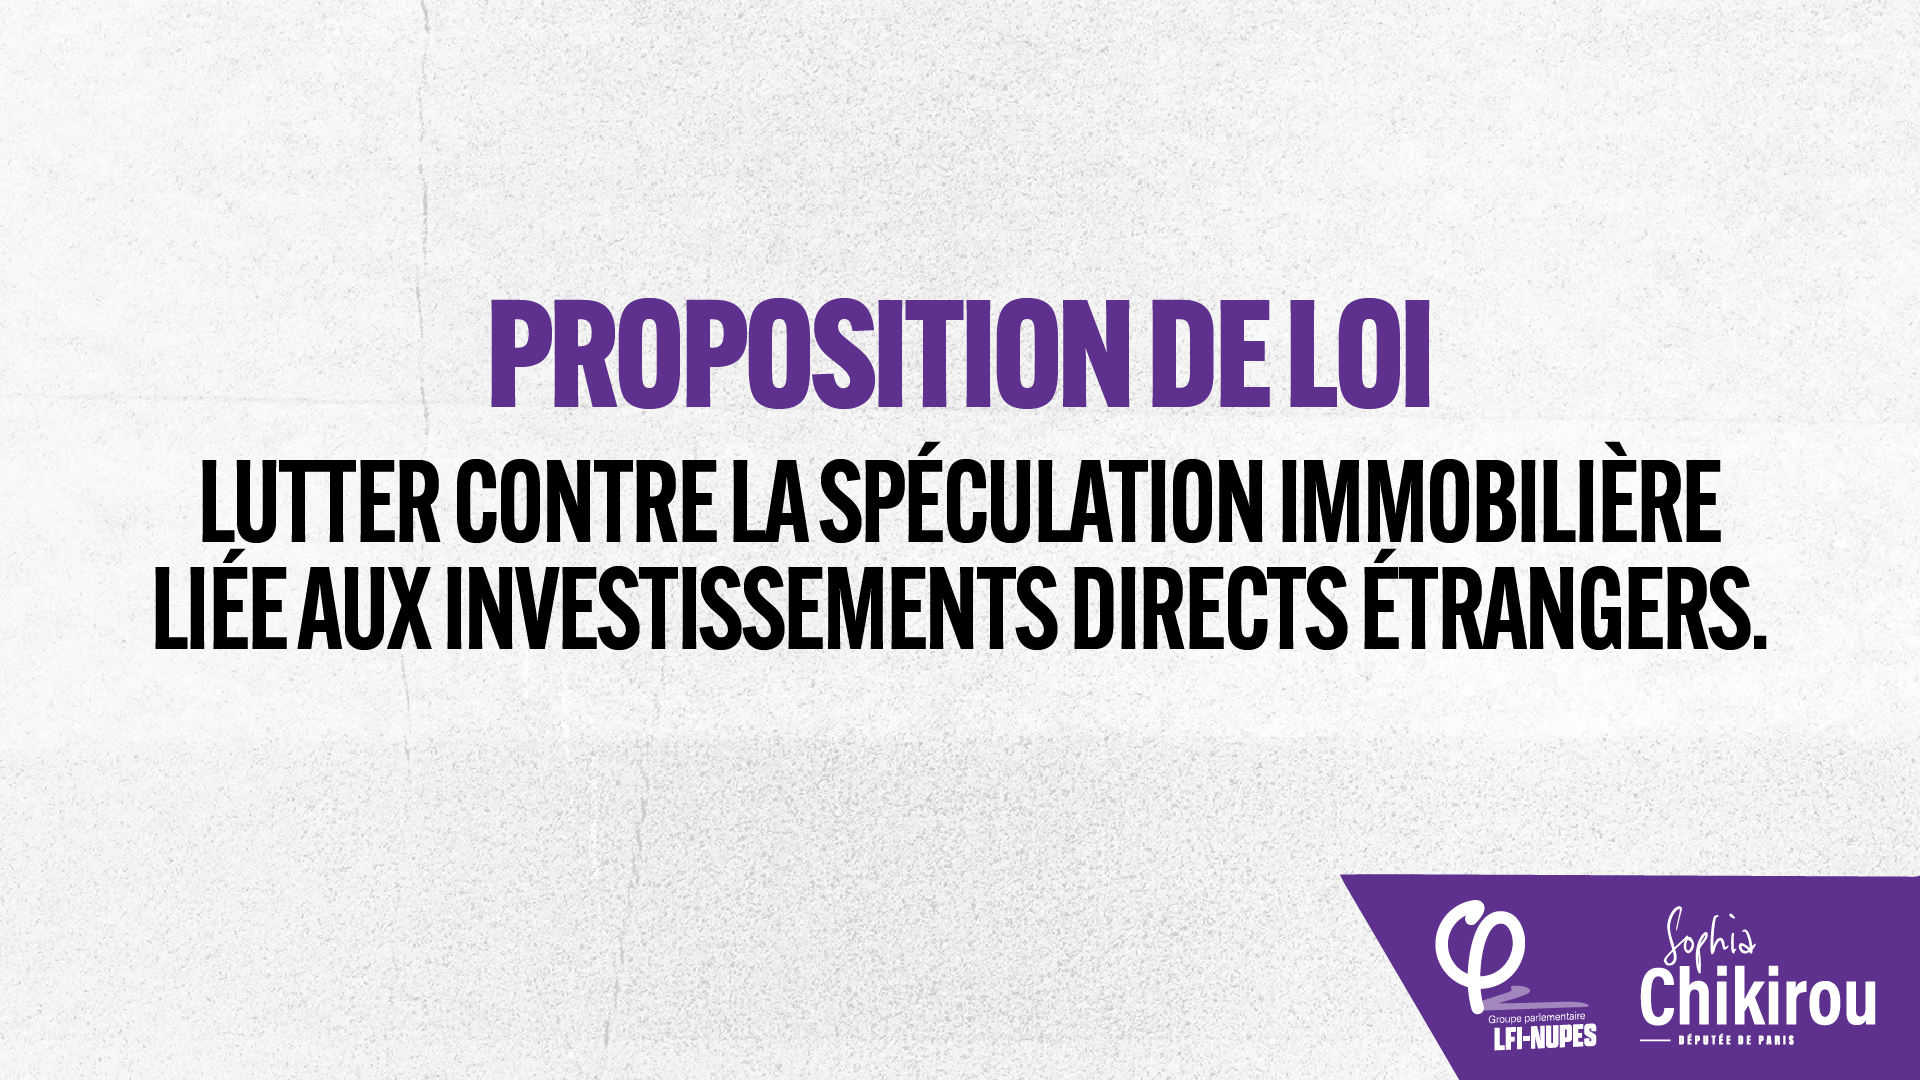 Proposition de loi : lutter contre la spéculation immobilière liée aux investissements directs étrangers.